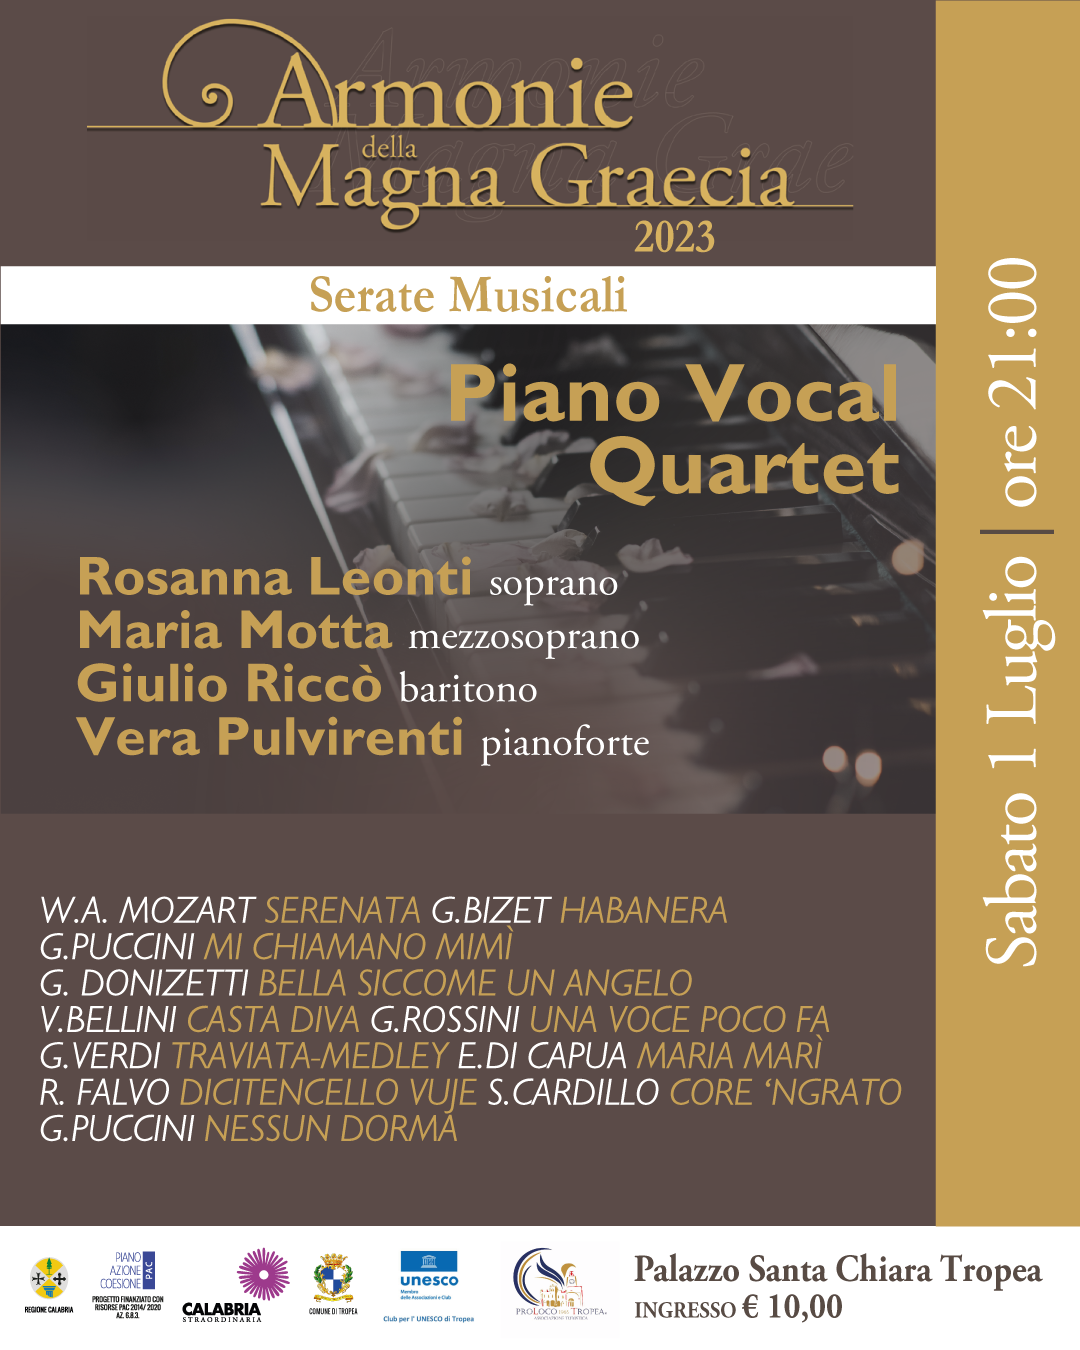 Piano Vocal QuartetRosanna Leonti (soprano)Maria Motta (mezzosoprano)Giulio Riccò (baritono)Vera Pulvirenti (pianoforte)